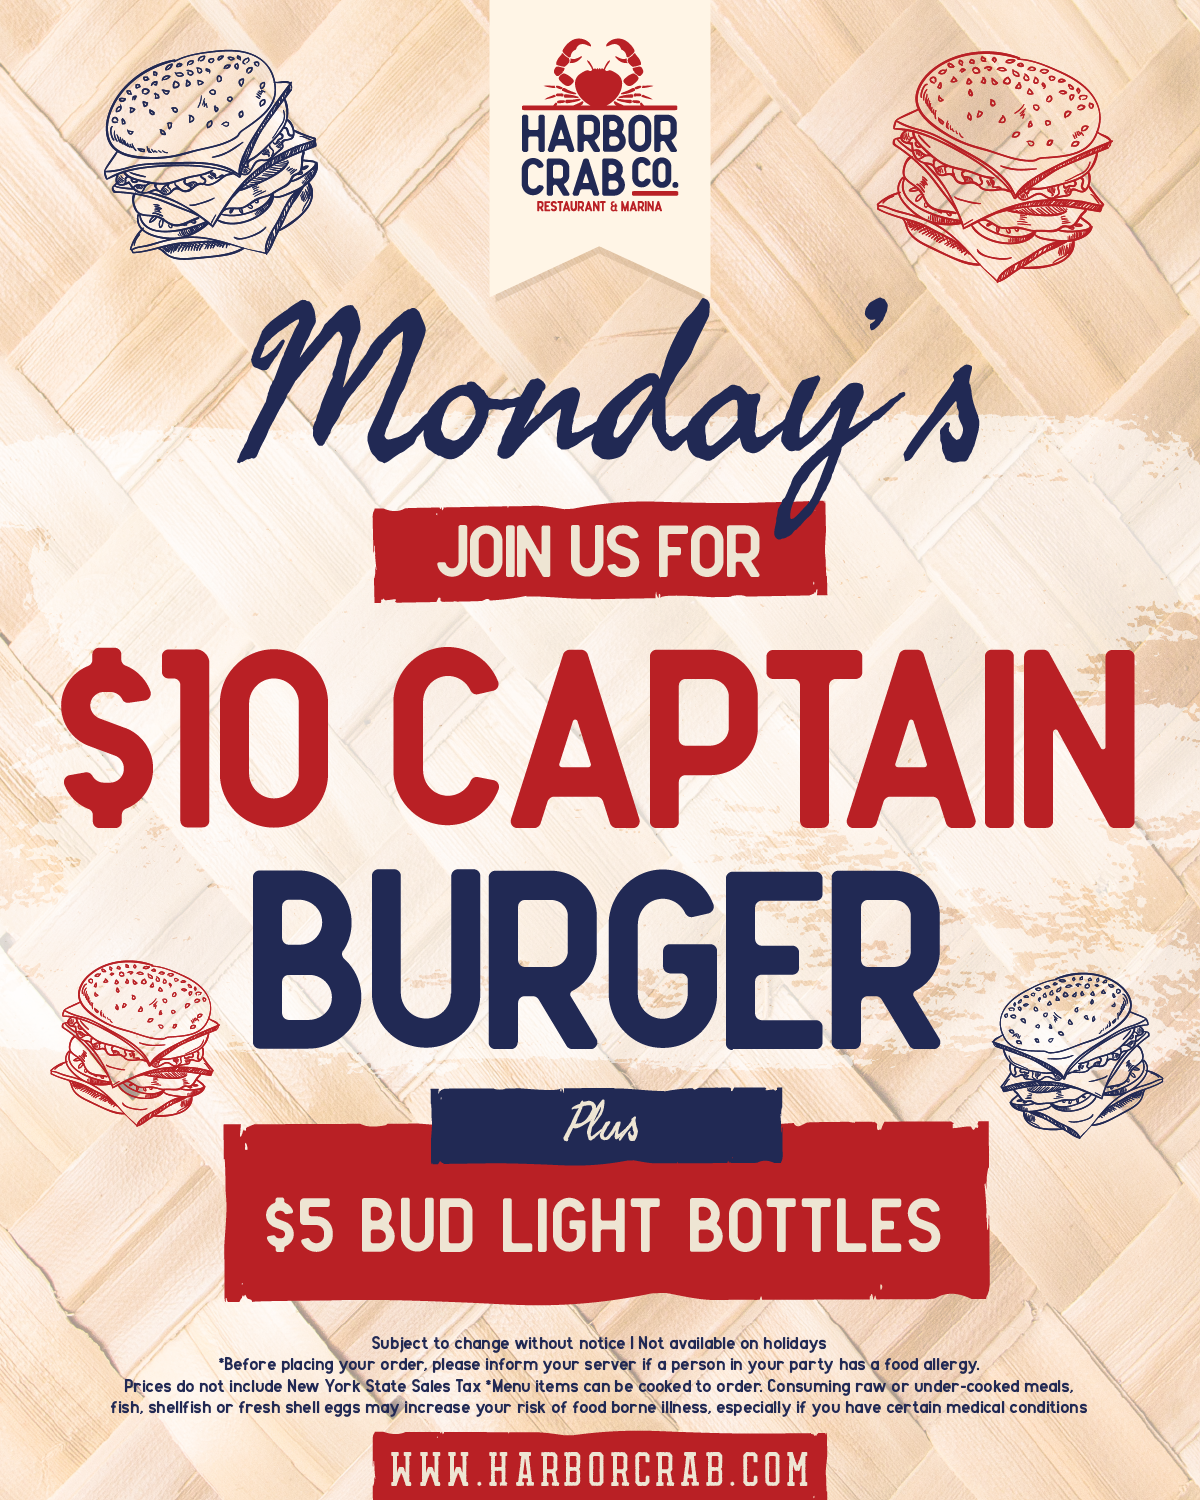 $10 Captain Burger flyer